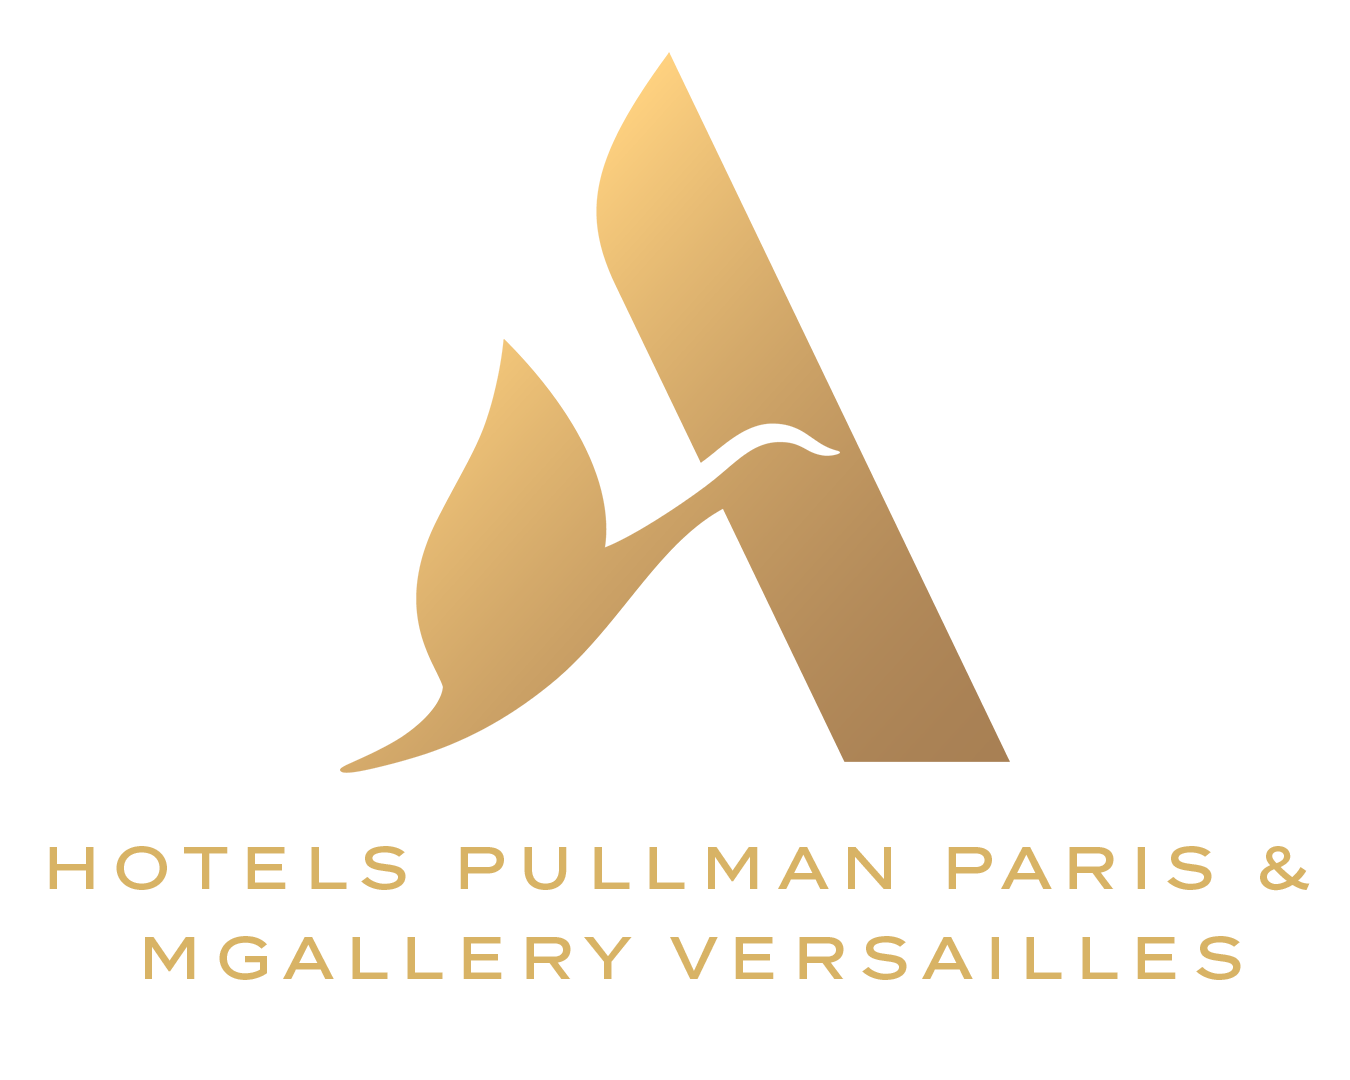 Accor - Pullman Paris hotels & Mgallery Versailles